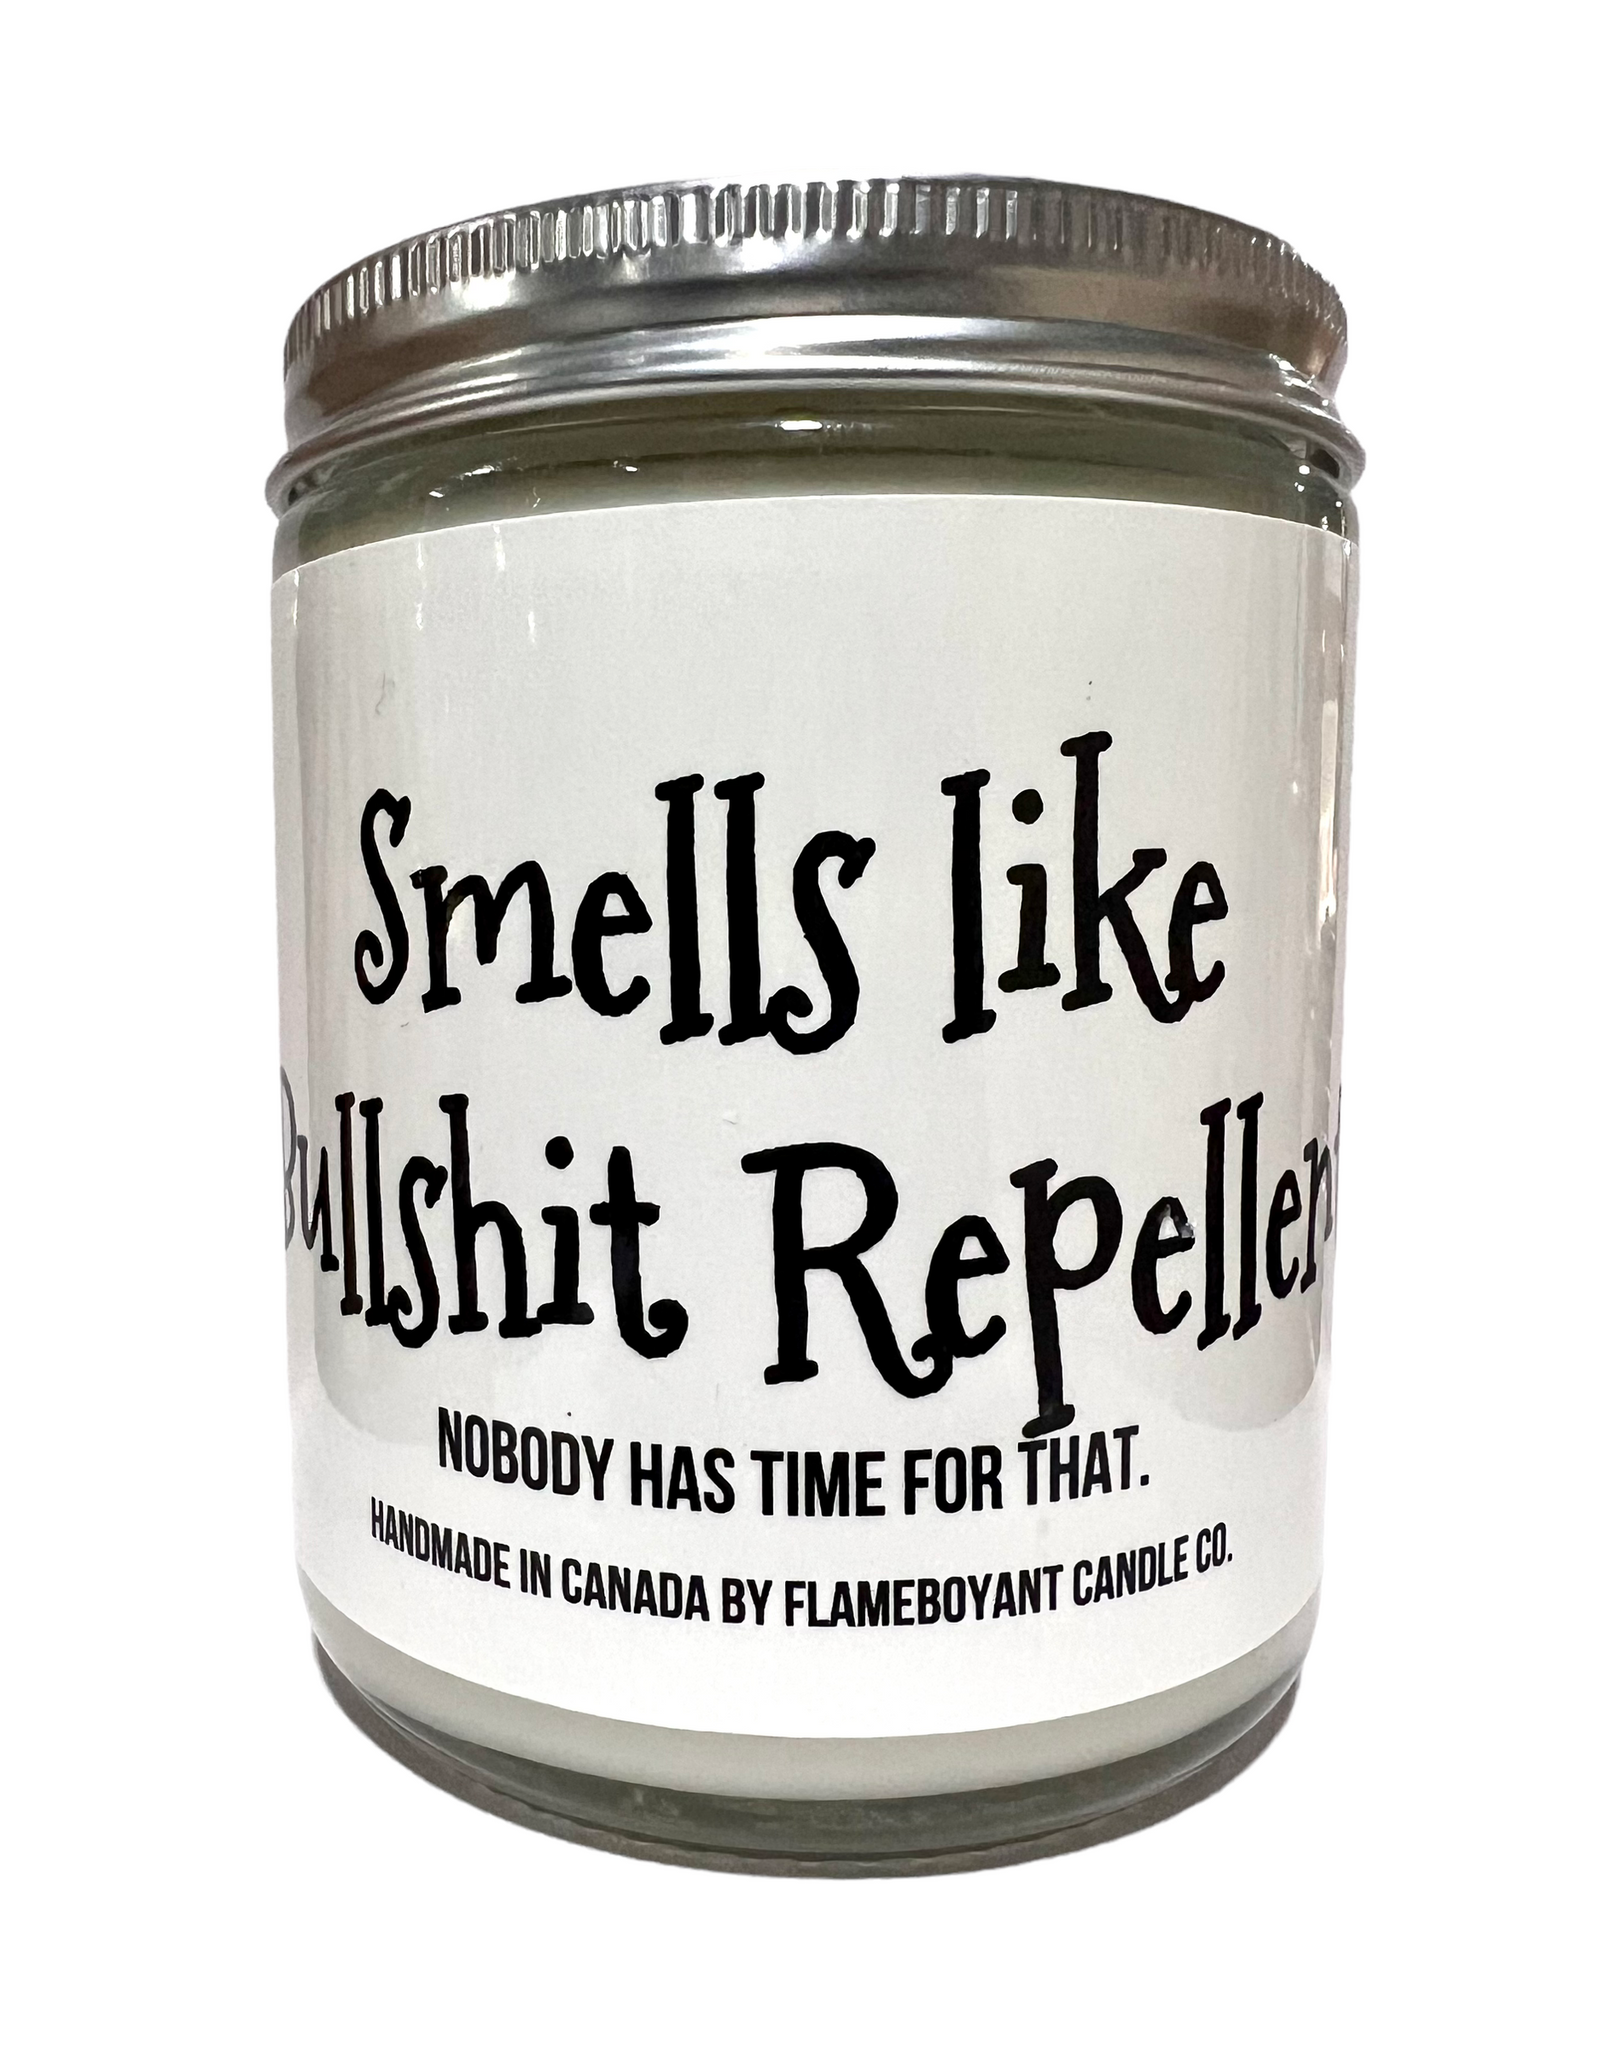 Smells like bullshit repellent